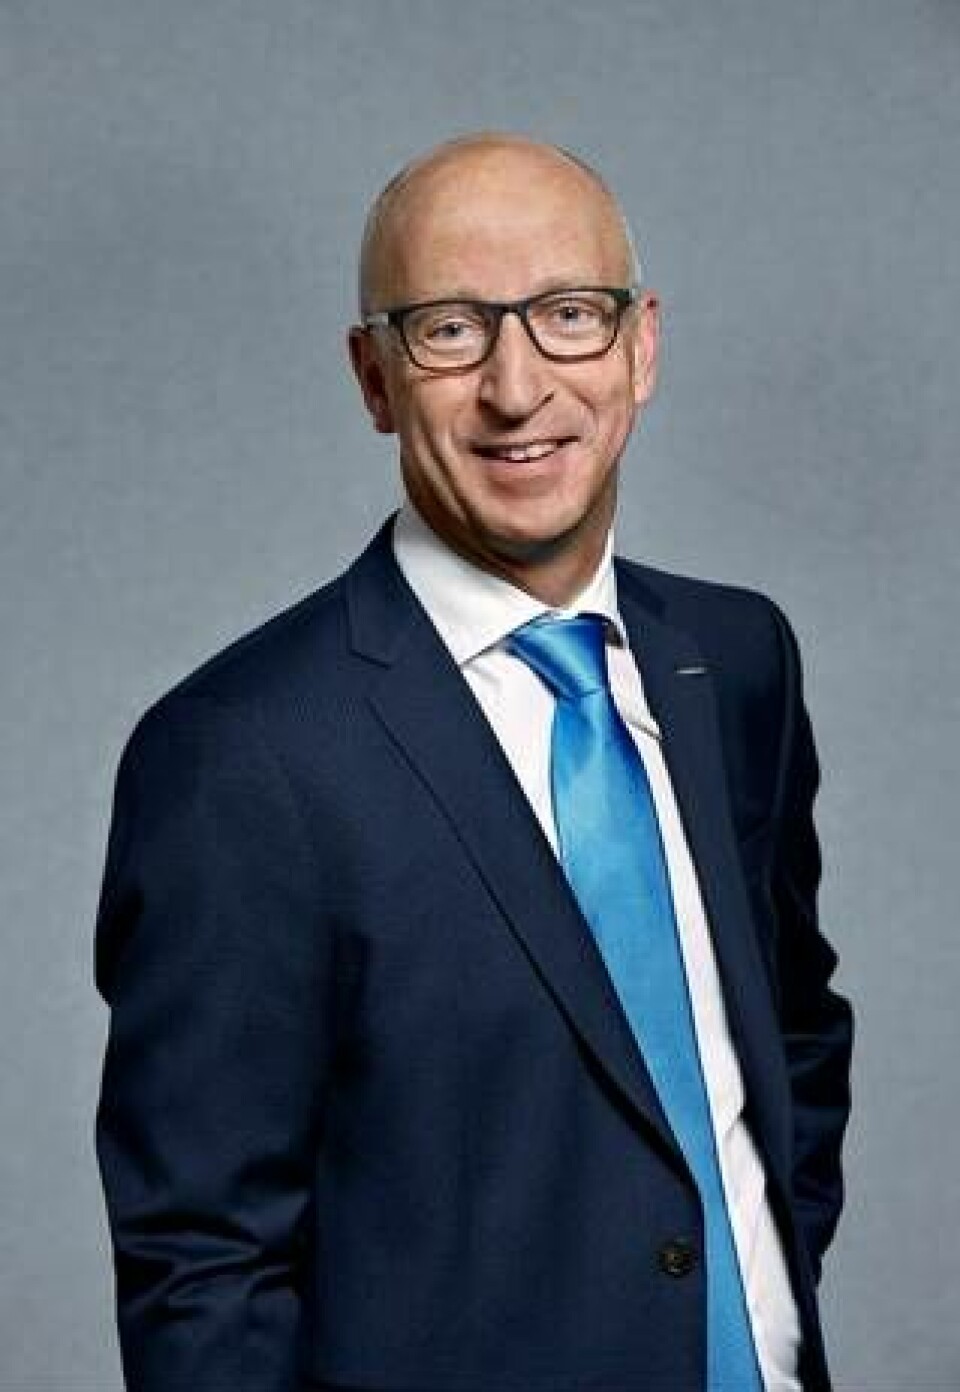 Lars Stenqvist, teknisk direktör på Volvo sedan 2016, har tidigare jobbat för så väl Volkswagen som Scania. Foto: Volvo Group